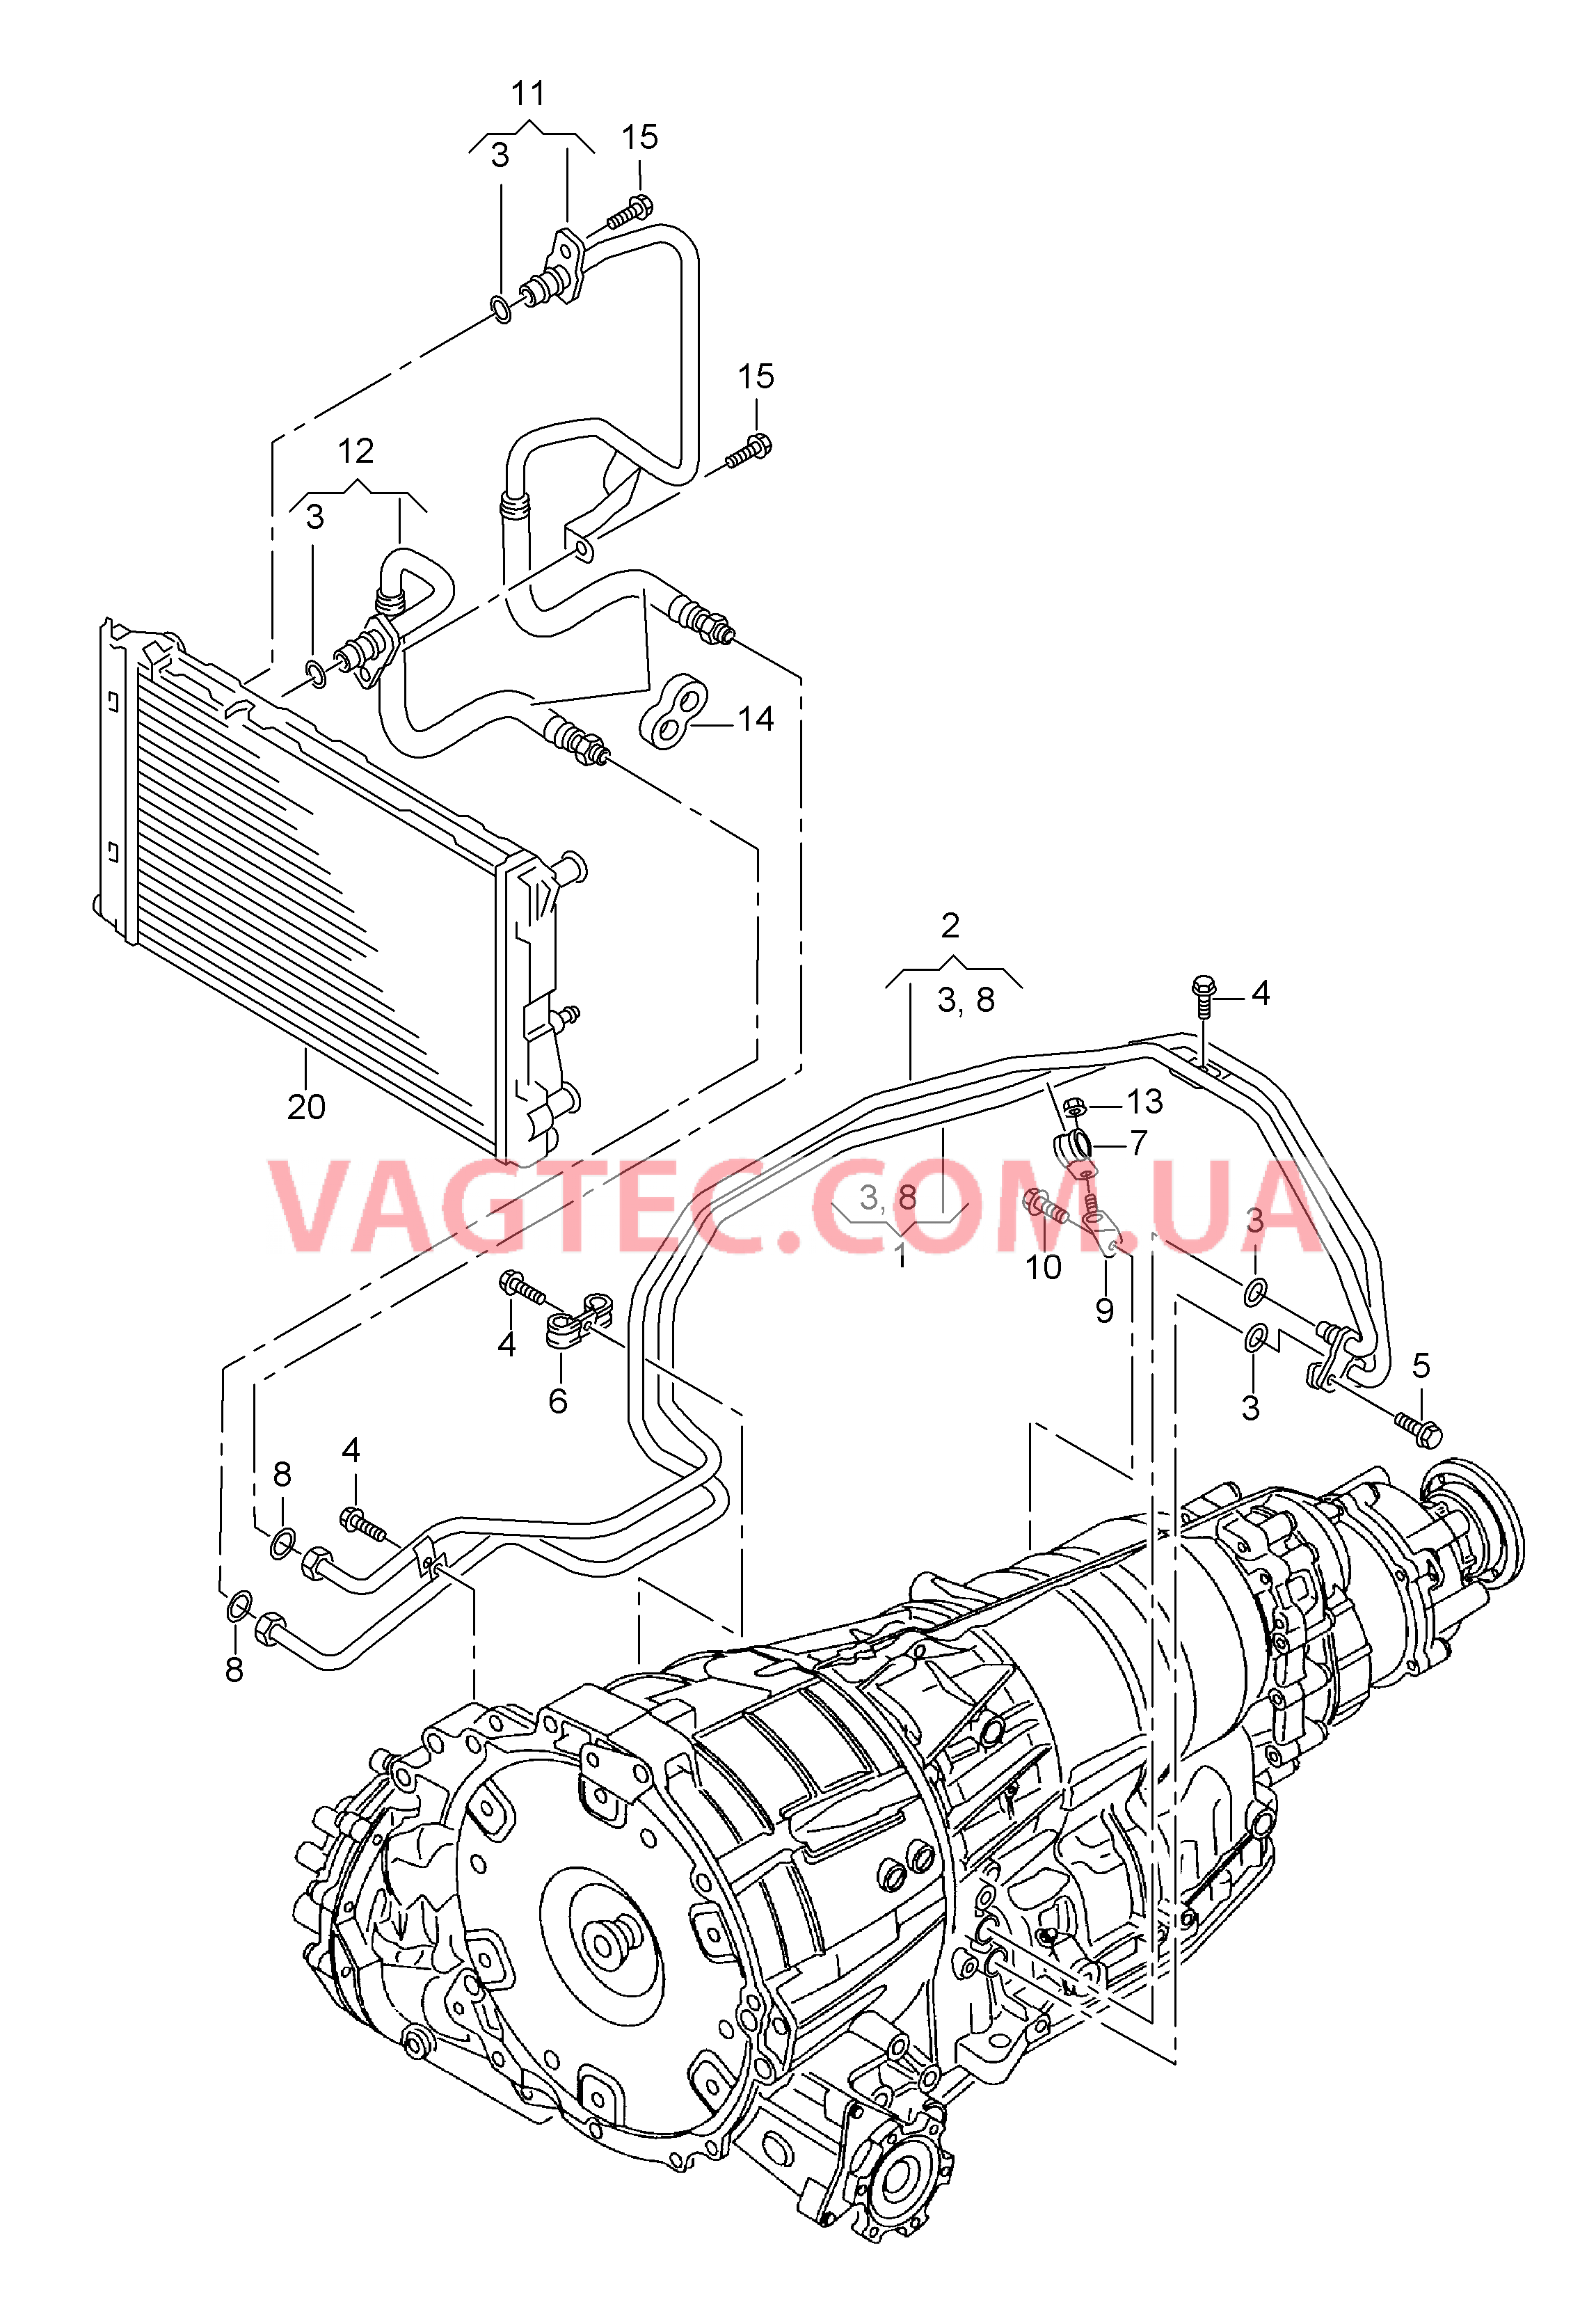 Напорный маслопровод для охлаждения масла коробки передач  8-ступенчатая АКП для а/м с гибридным приводом  для AUDI Q5 2011